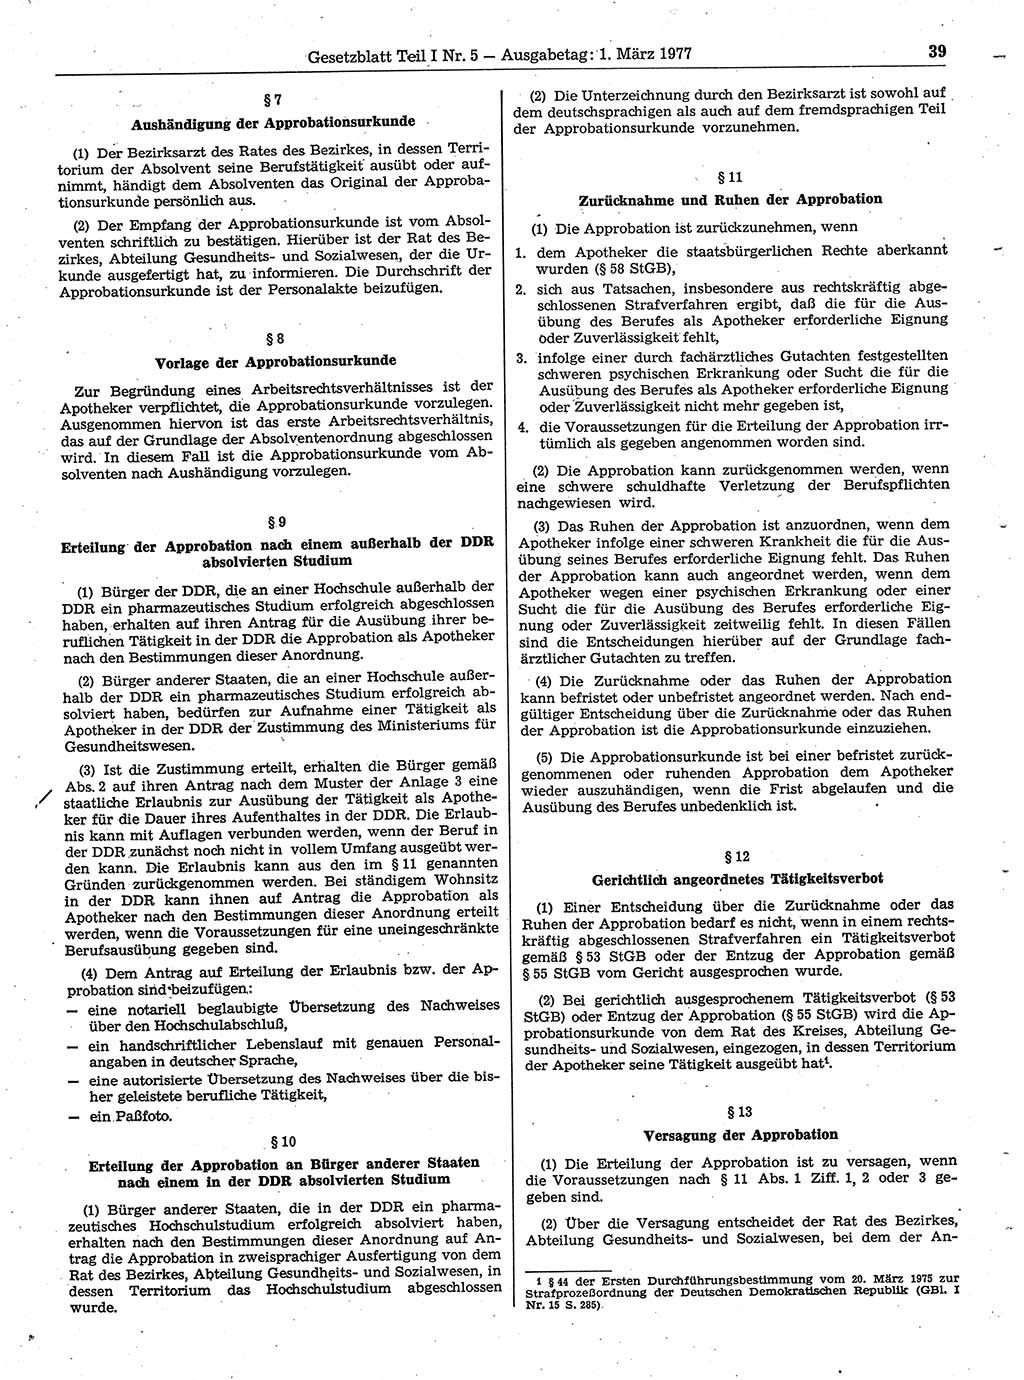 Gesetzblatt (GBl.) der Deutschen Demokratischen Republik (DDR) Teil Ⅰ 1977, Seite 39 (GBl. DDR Ⅰ 1977, S. 39)